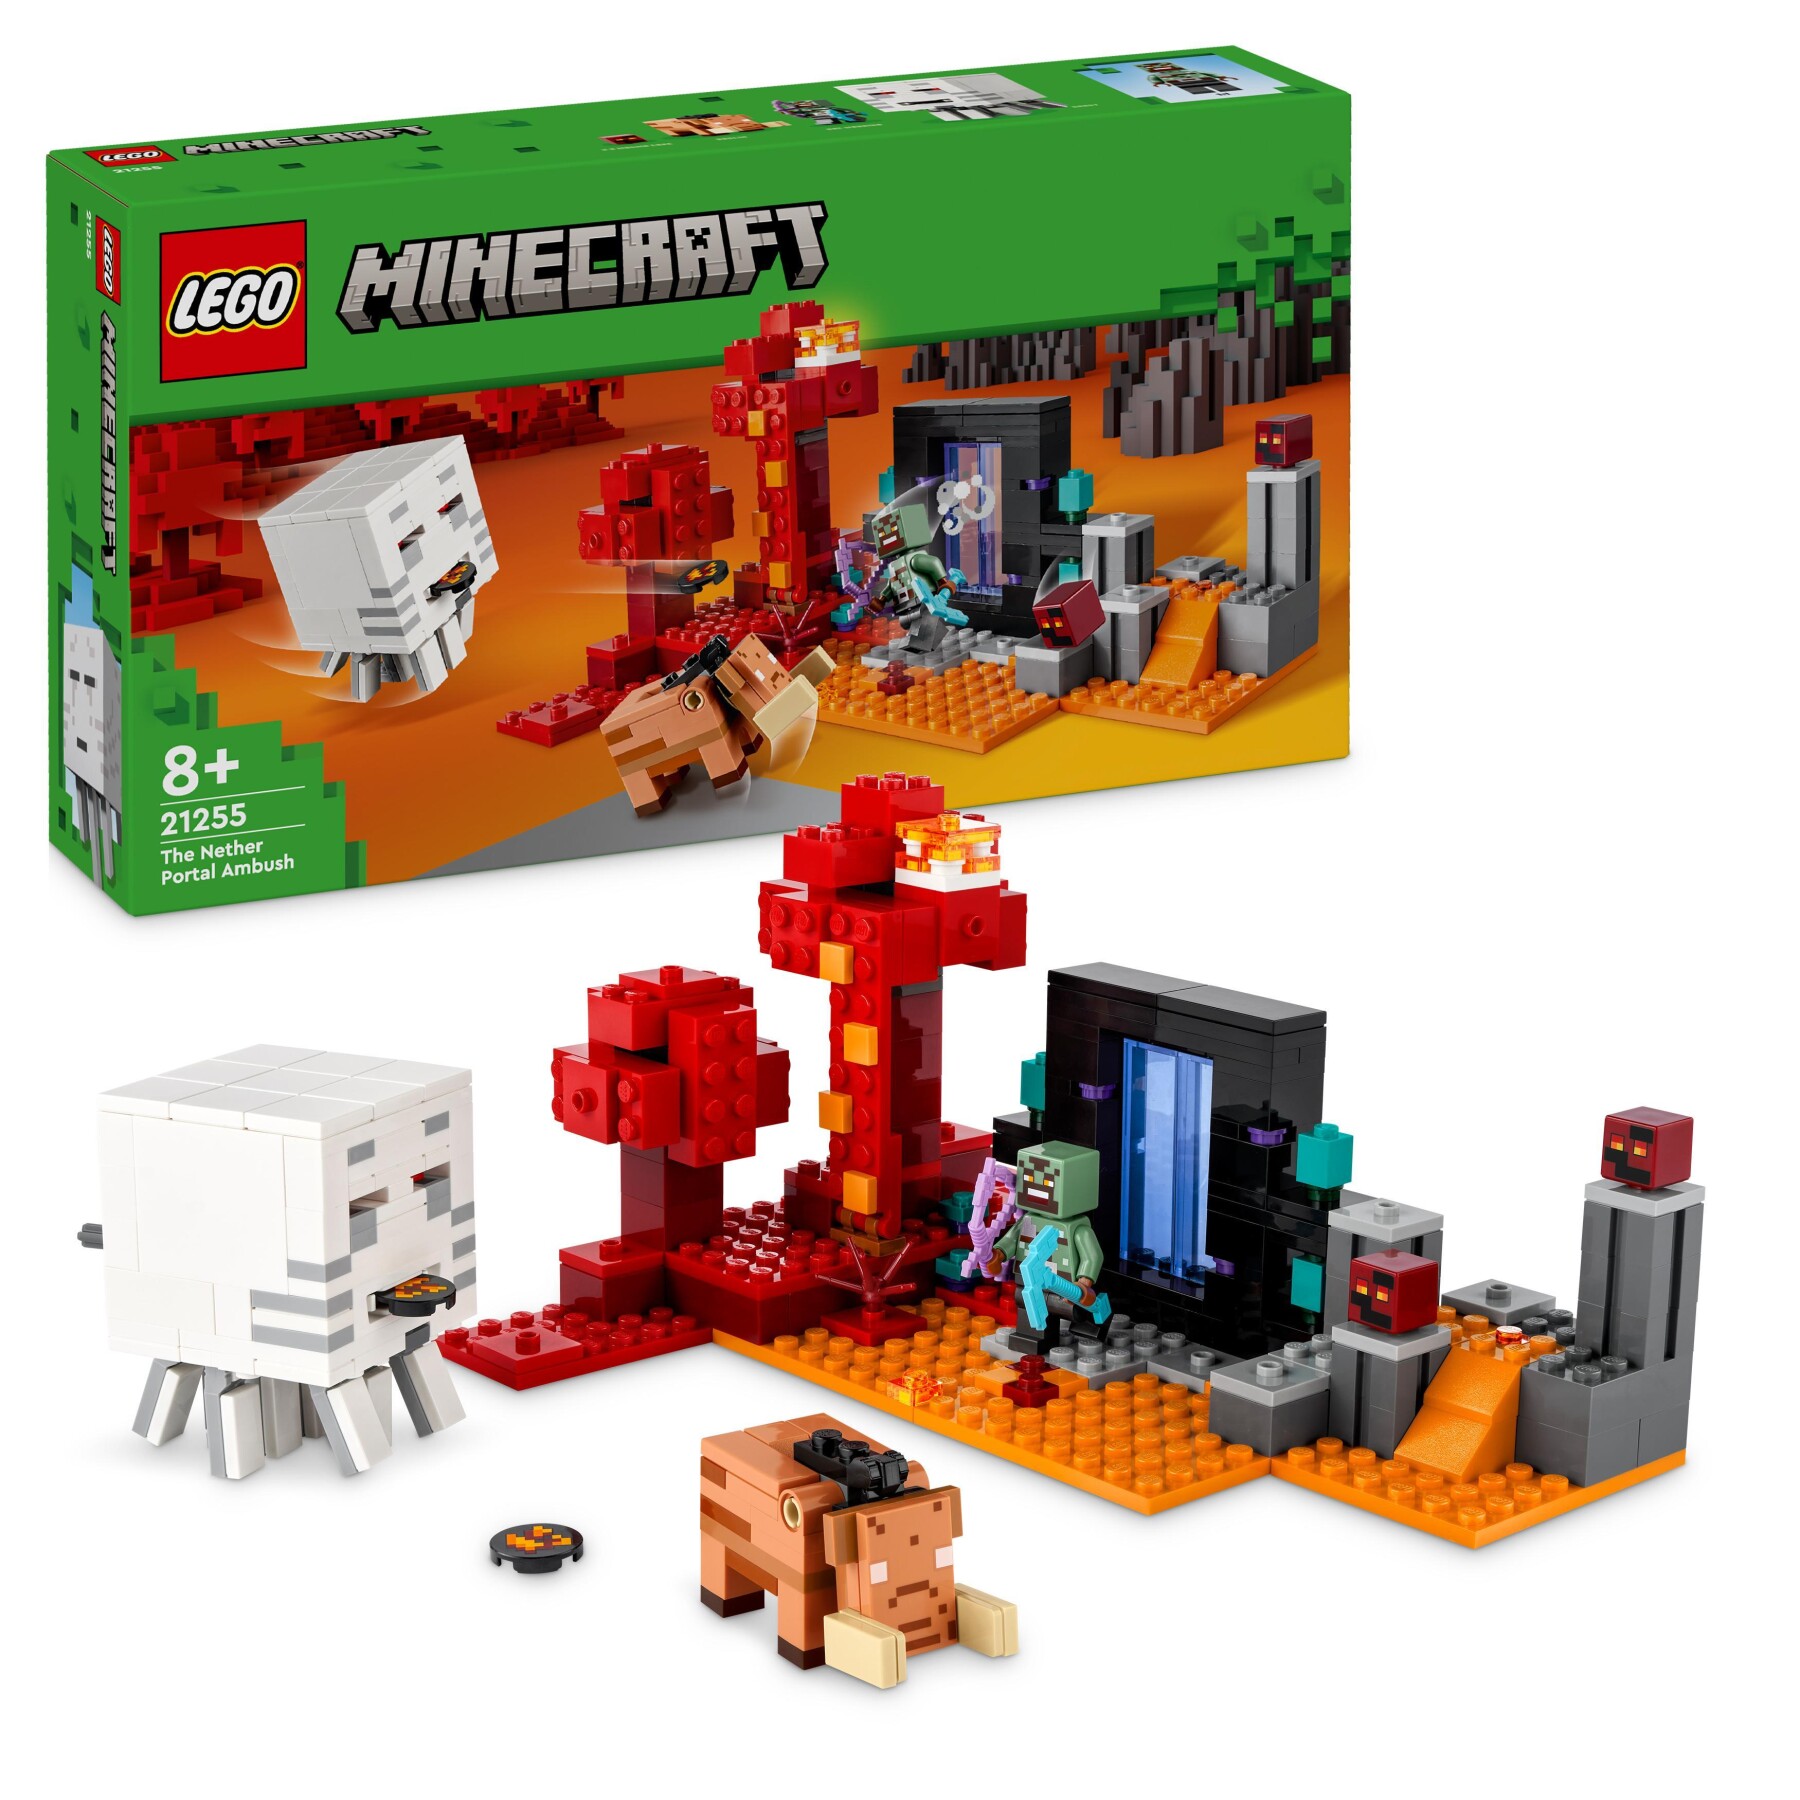 Lego minecraft 21255 agguato nel portale del nether, gioco per bambini di 8+ anni, set con scene di battaglia e personaggi - MINECRAFT